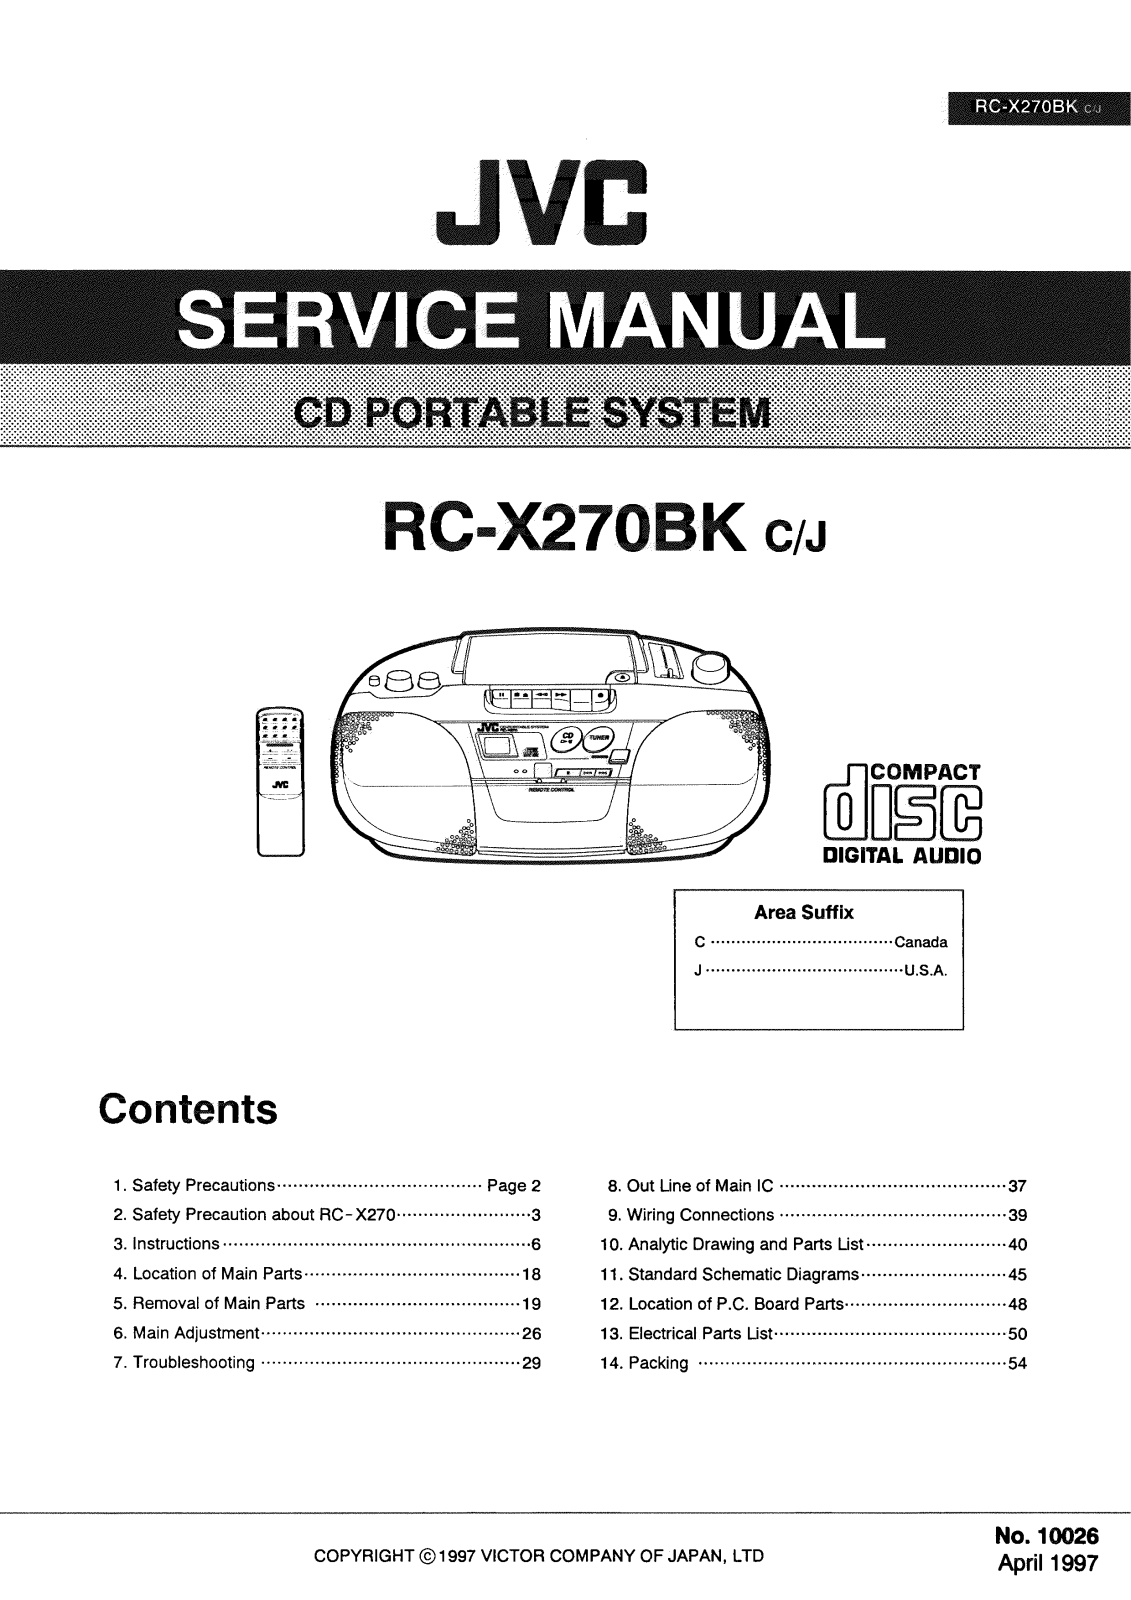 JVC rc-x270bk service Manual